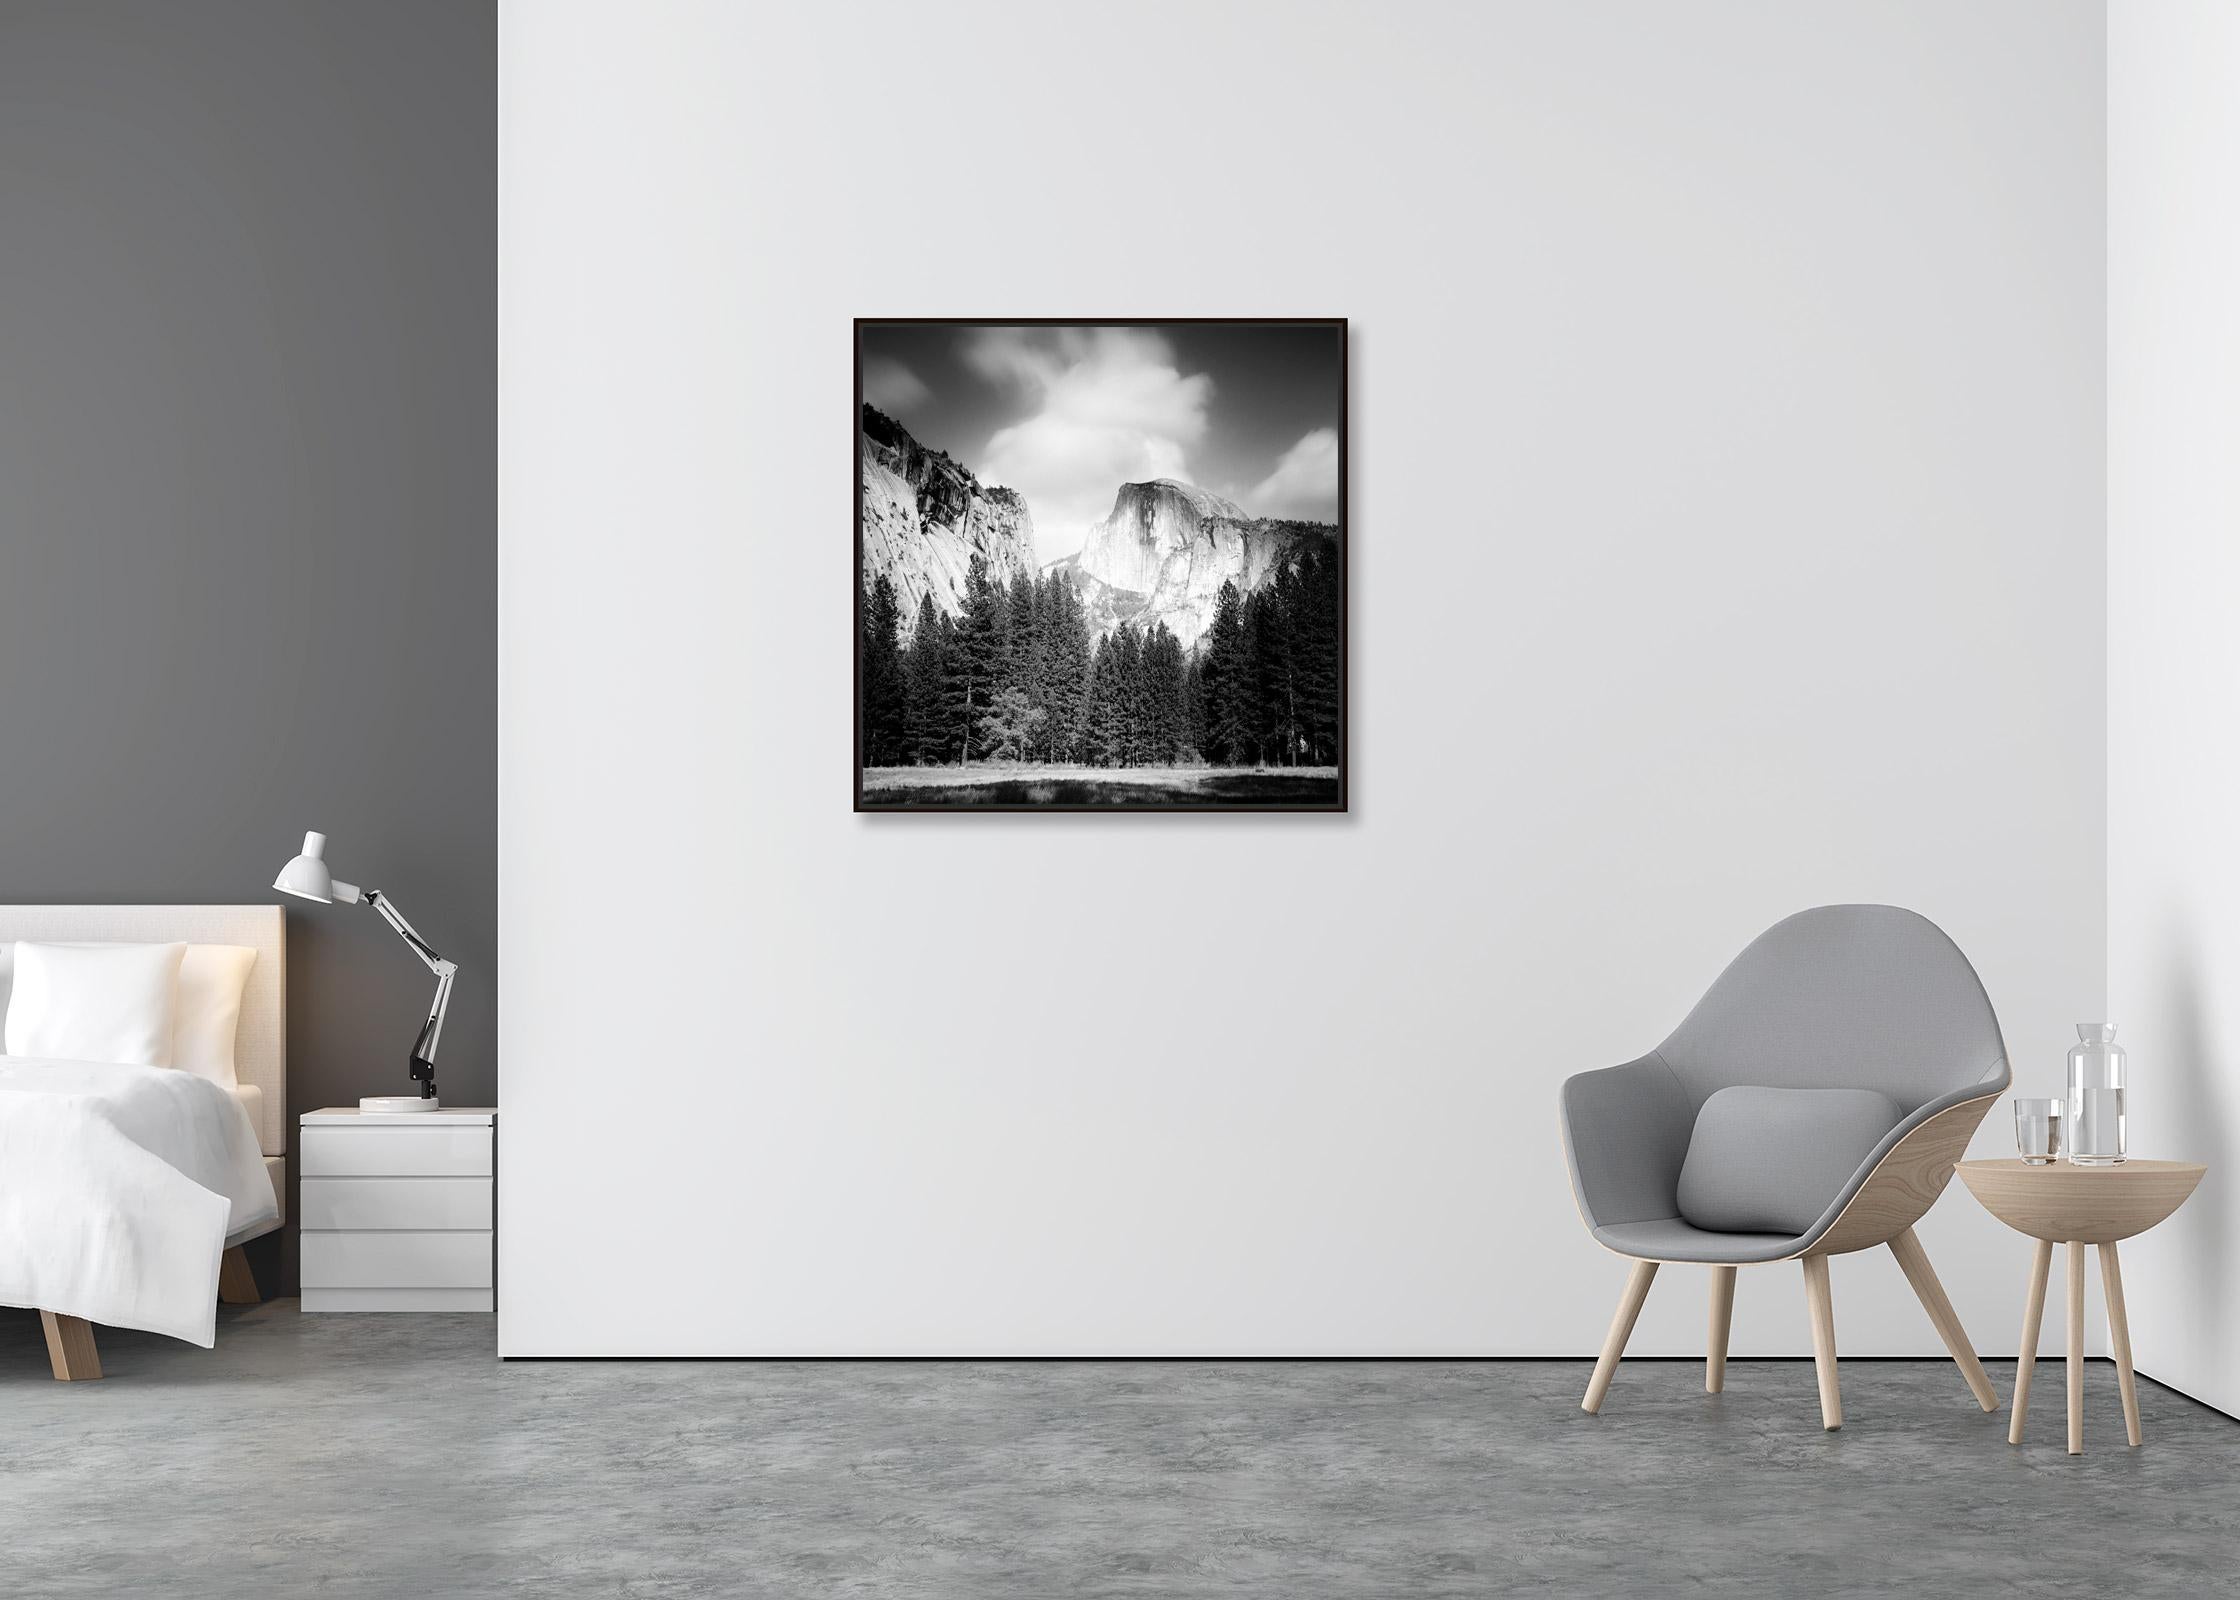 Halbkuppel, Yosemite National Park, USA, Schwarz-Weiß-Landschaftsfotografie (Zeitgenössisch), Photograph, von Gerald Berghammer